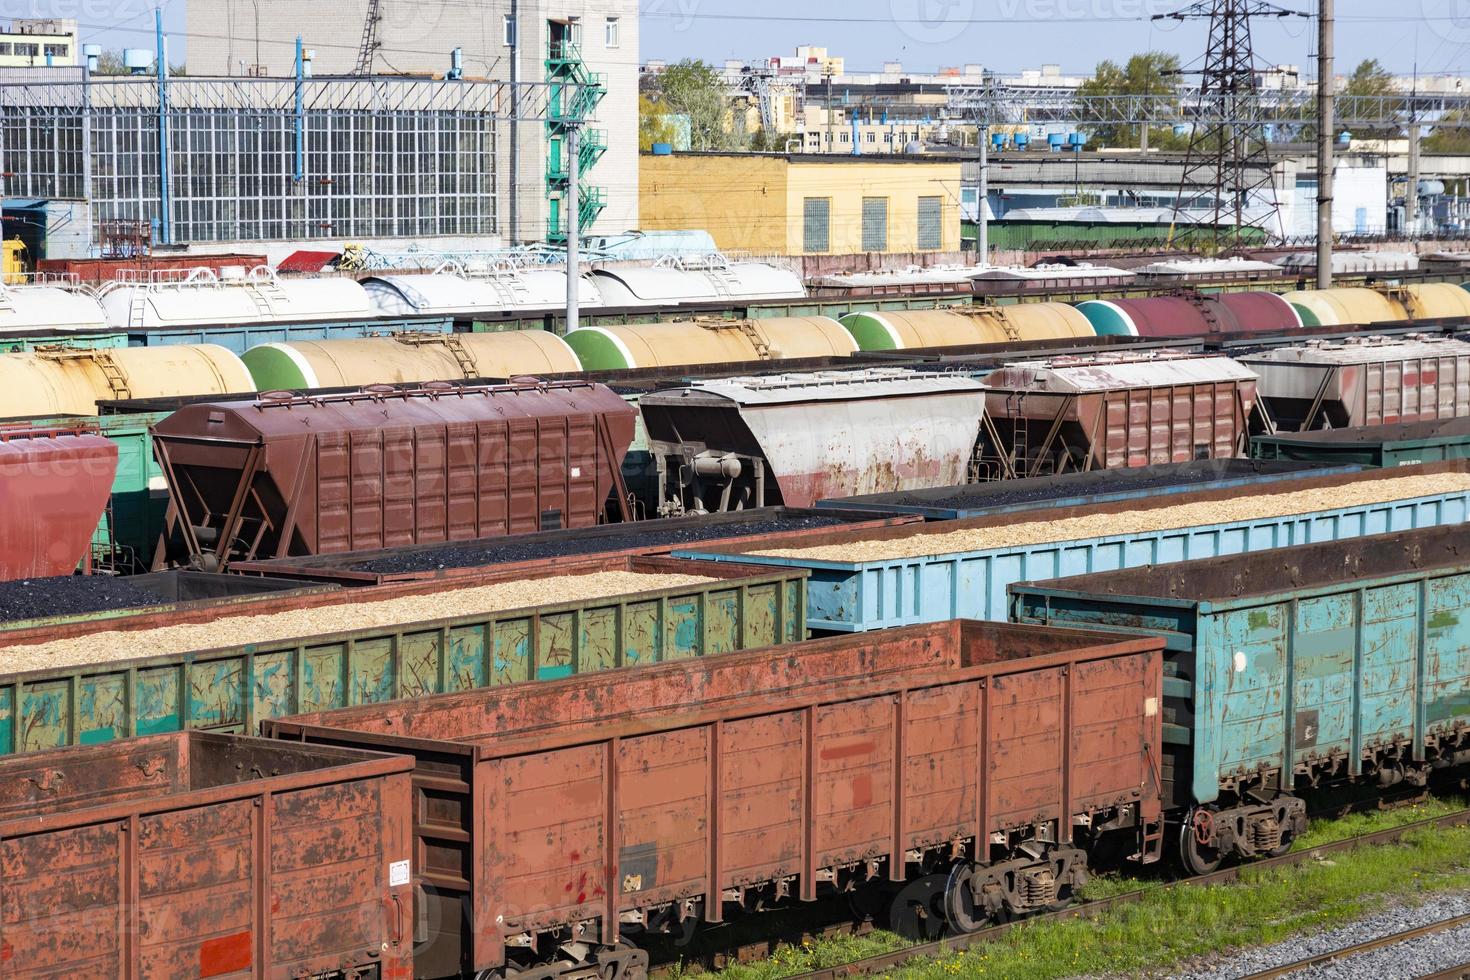 vagoni del carbone, vagoni con trucioli e segatura, vagoni vuoti come parte di un treno. il riscaldamento globale. produzione di energia. foto